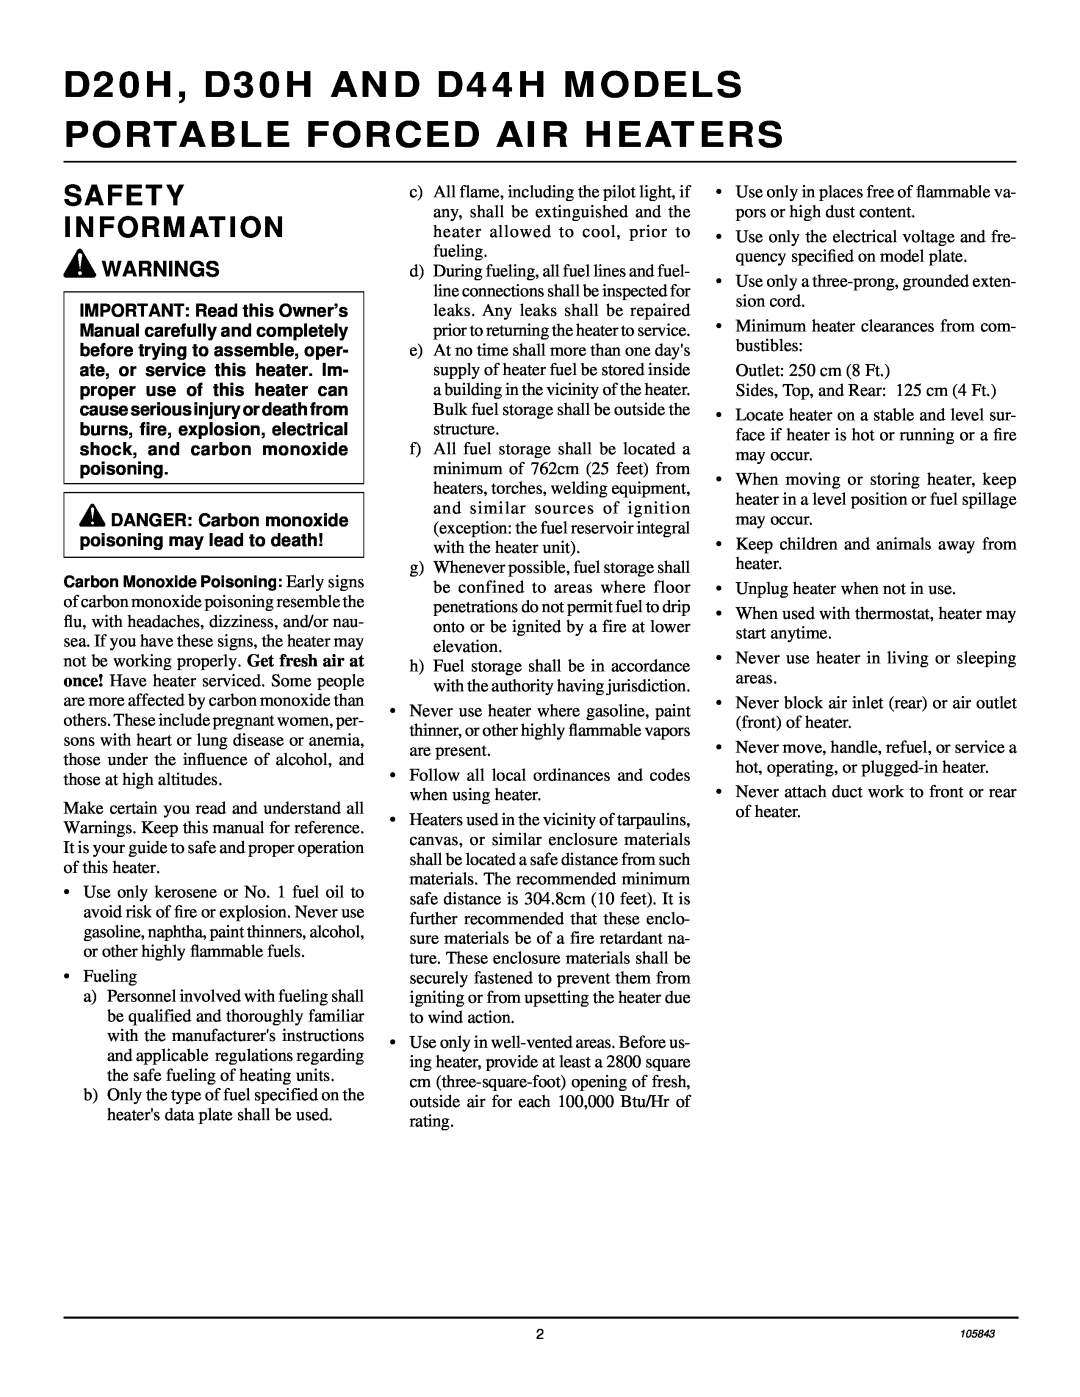 Desa D20H, D44H, D30H owner manual Safety Information, Warnings 